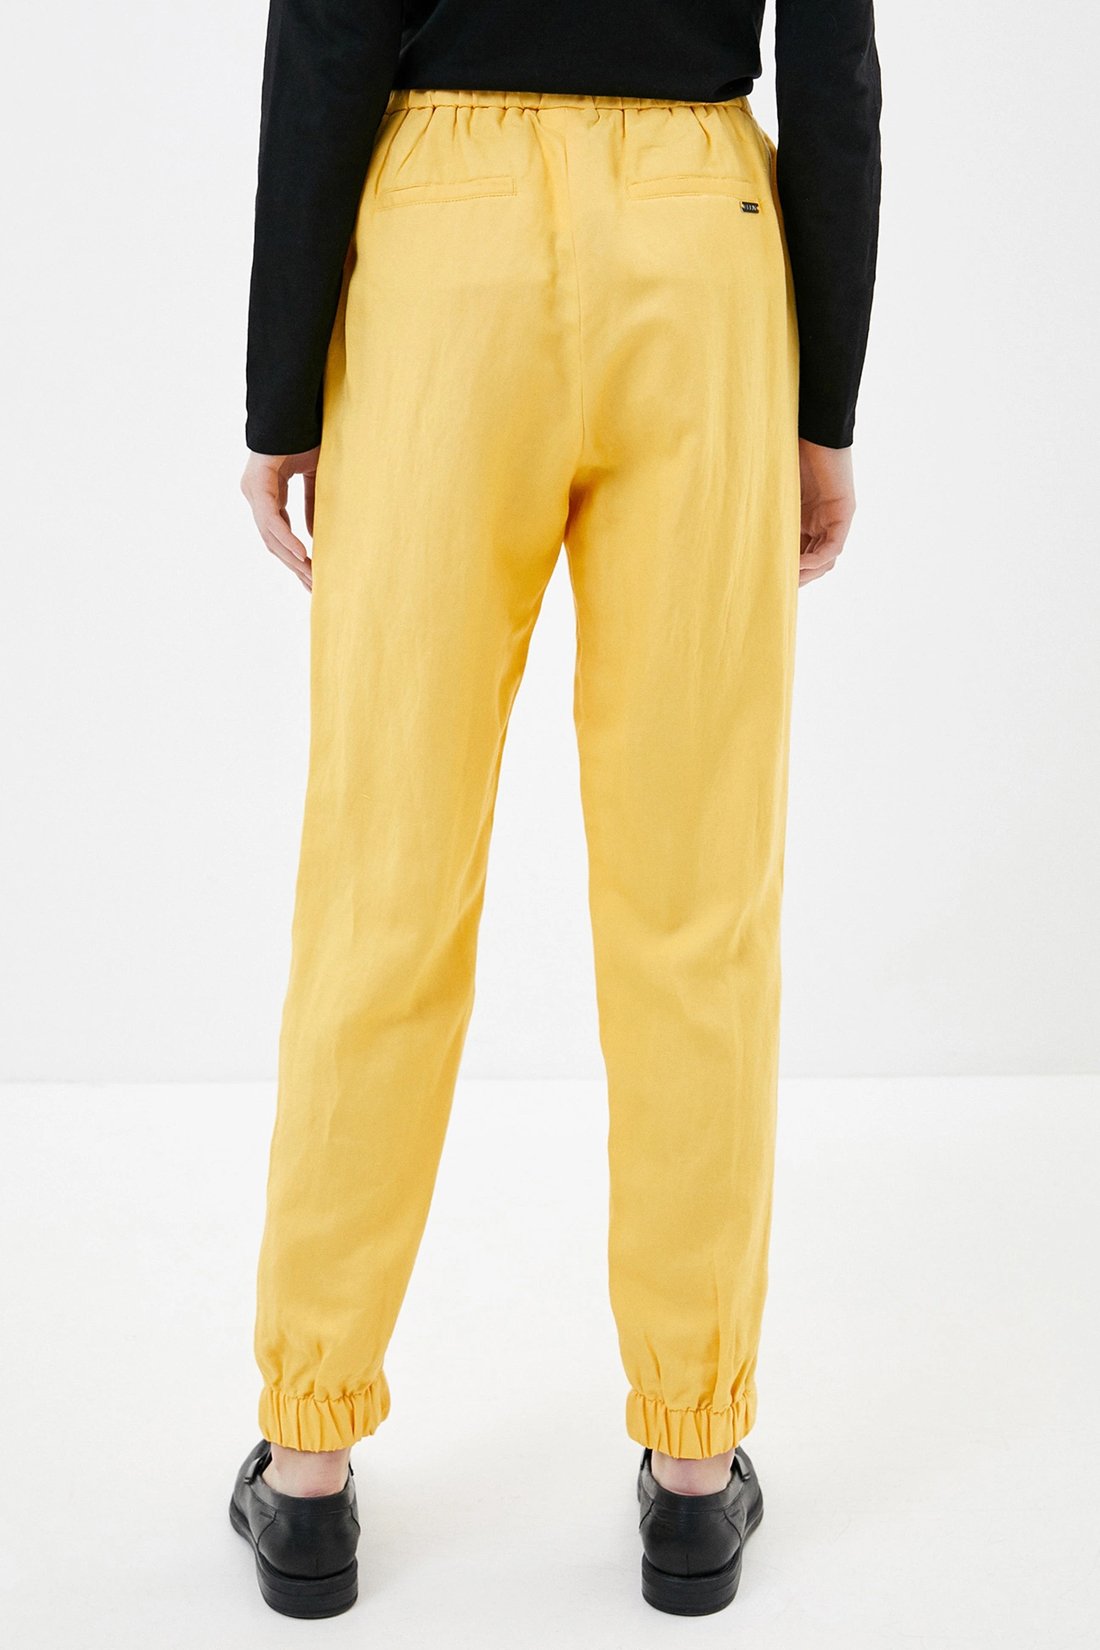 Спортивные брюки женские Baon B290048 желтые L